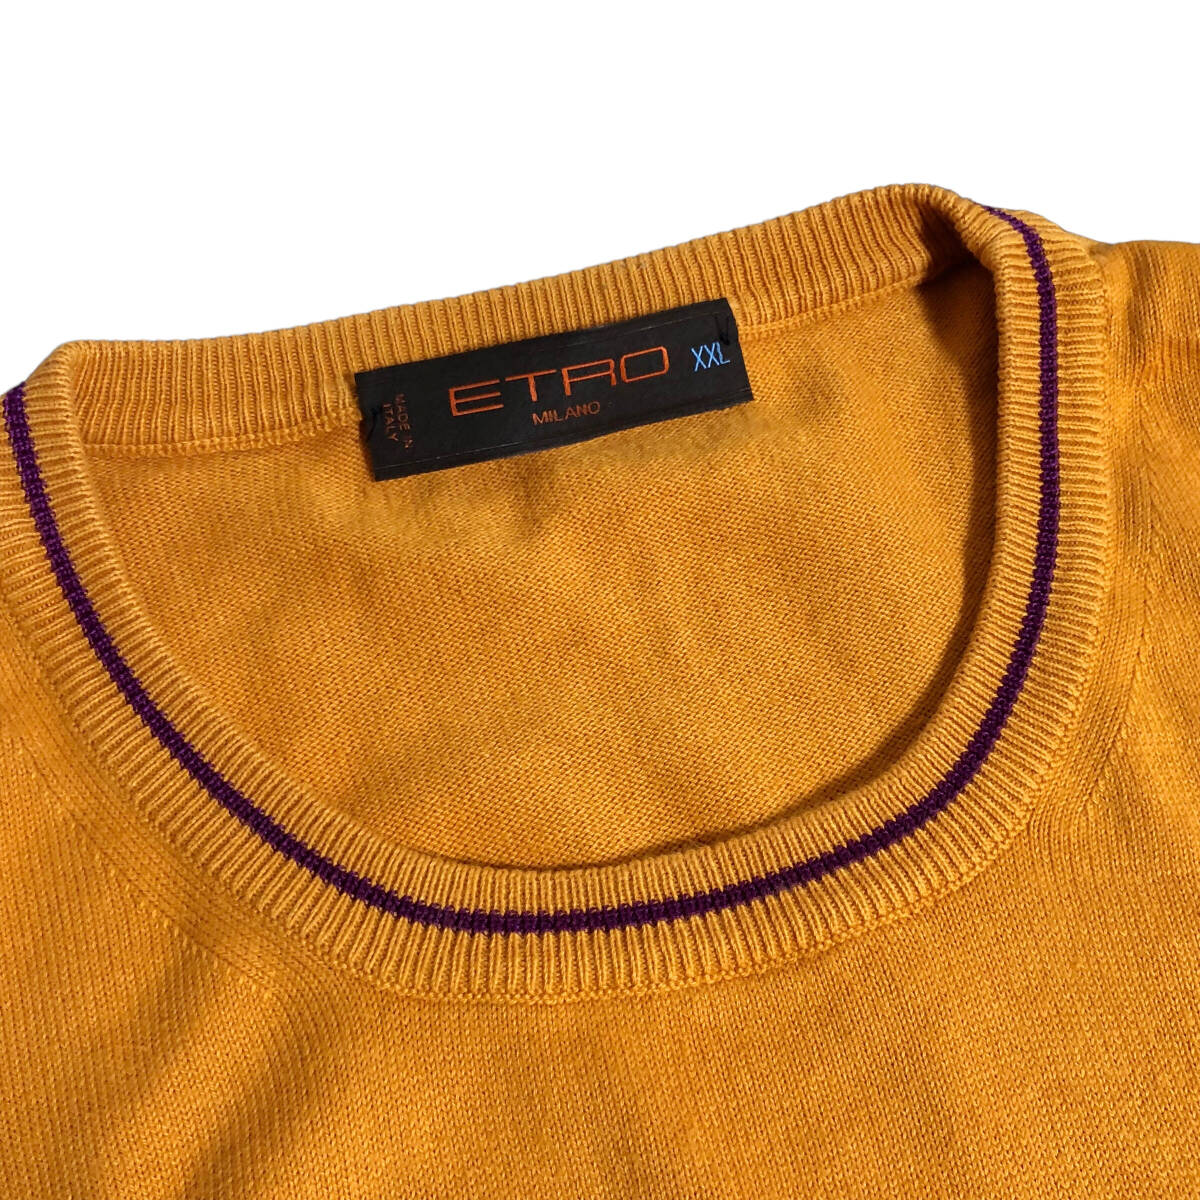 ETRO Etro вязаный свитер длинный рукав вышивка хлопок XXL orange Италия производства мужской A18